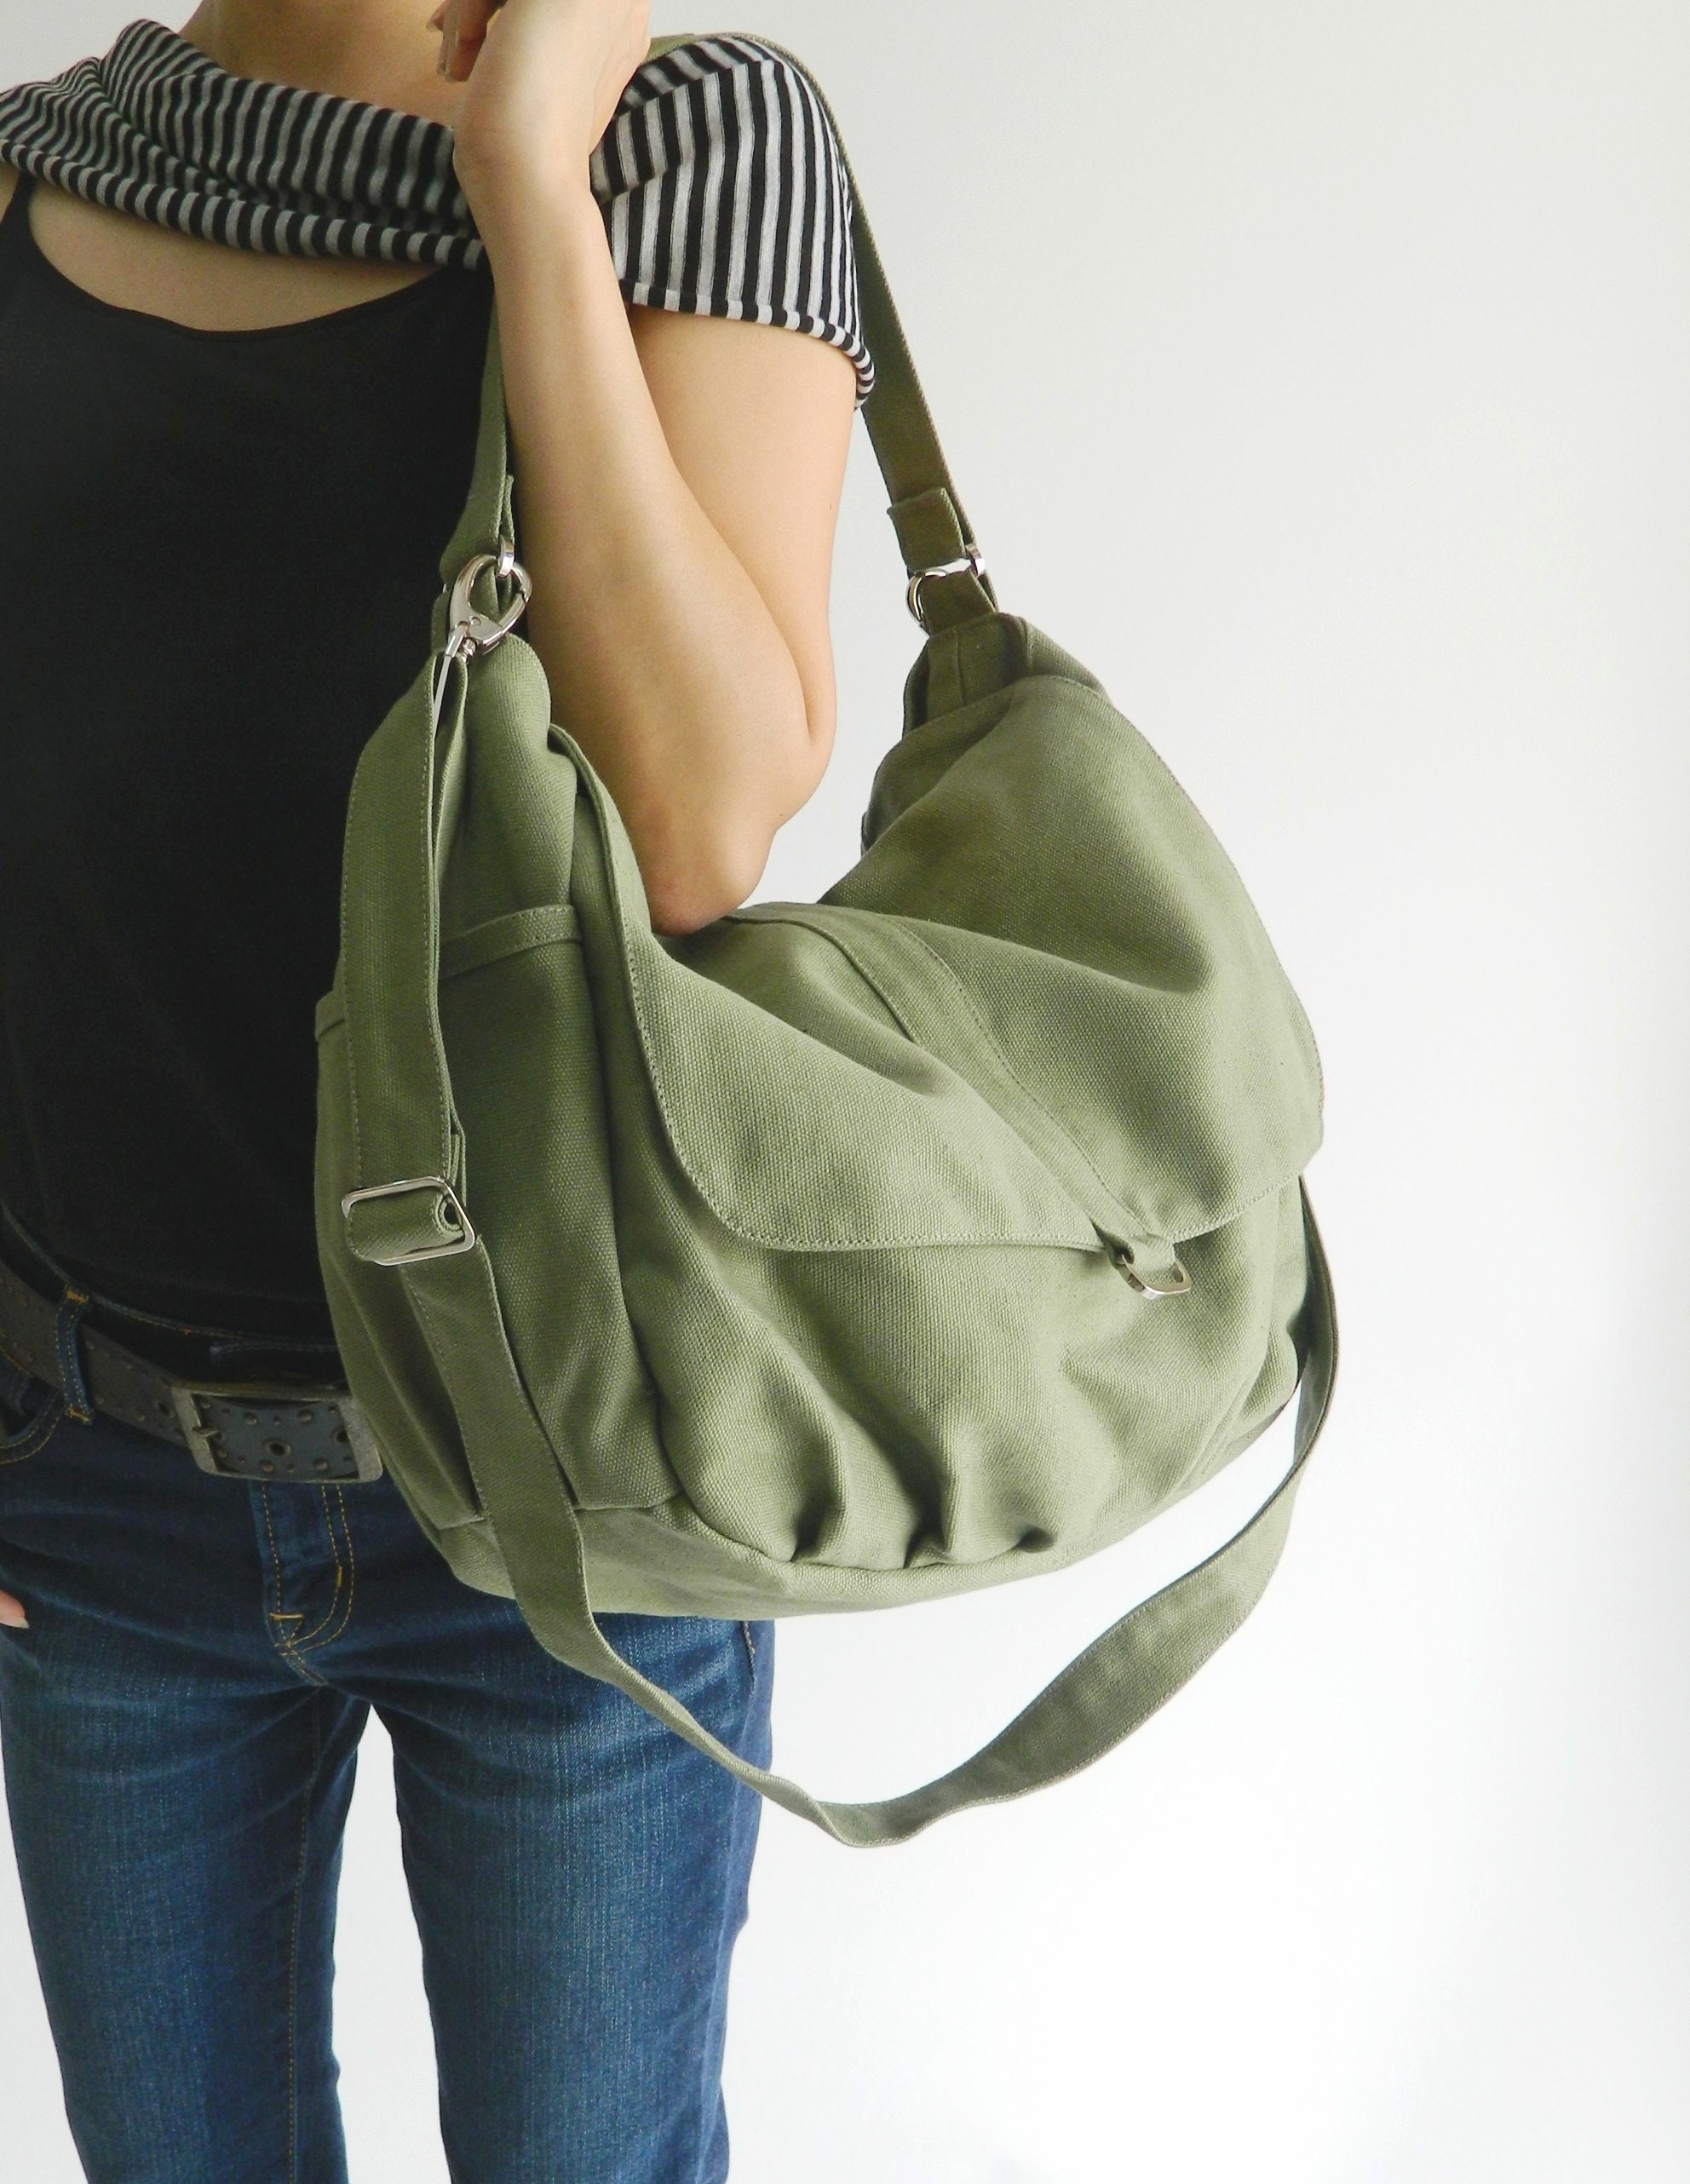 BAOSHA Canvas Messenger Shoulder Bag Purse Crossbody Bag Satchel Bag MS-03 Green 